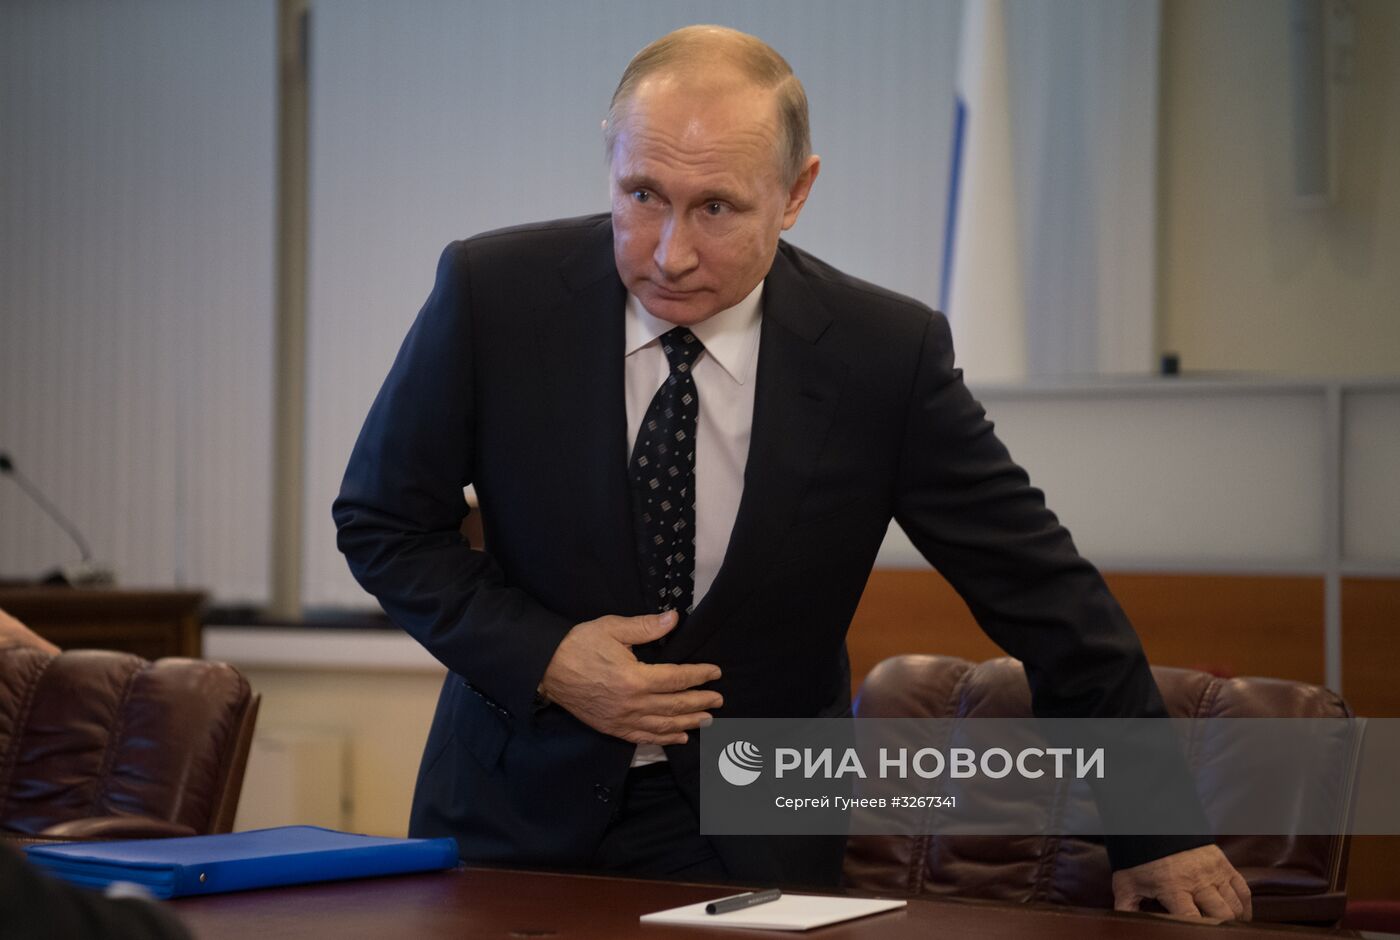 Президент РФ В. Путин подал в ЦИК документы для выдвижения кандидатом на выборах президента в 2018 году